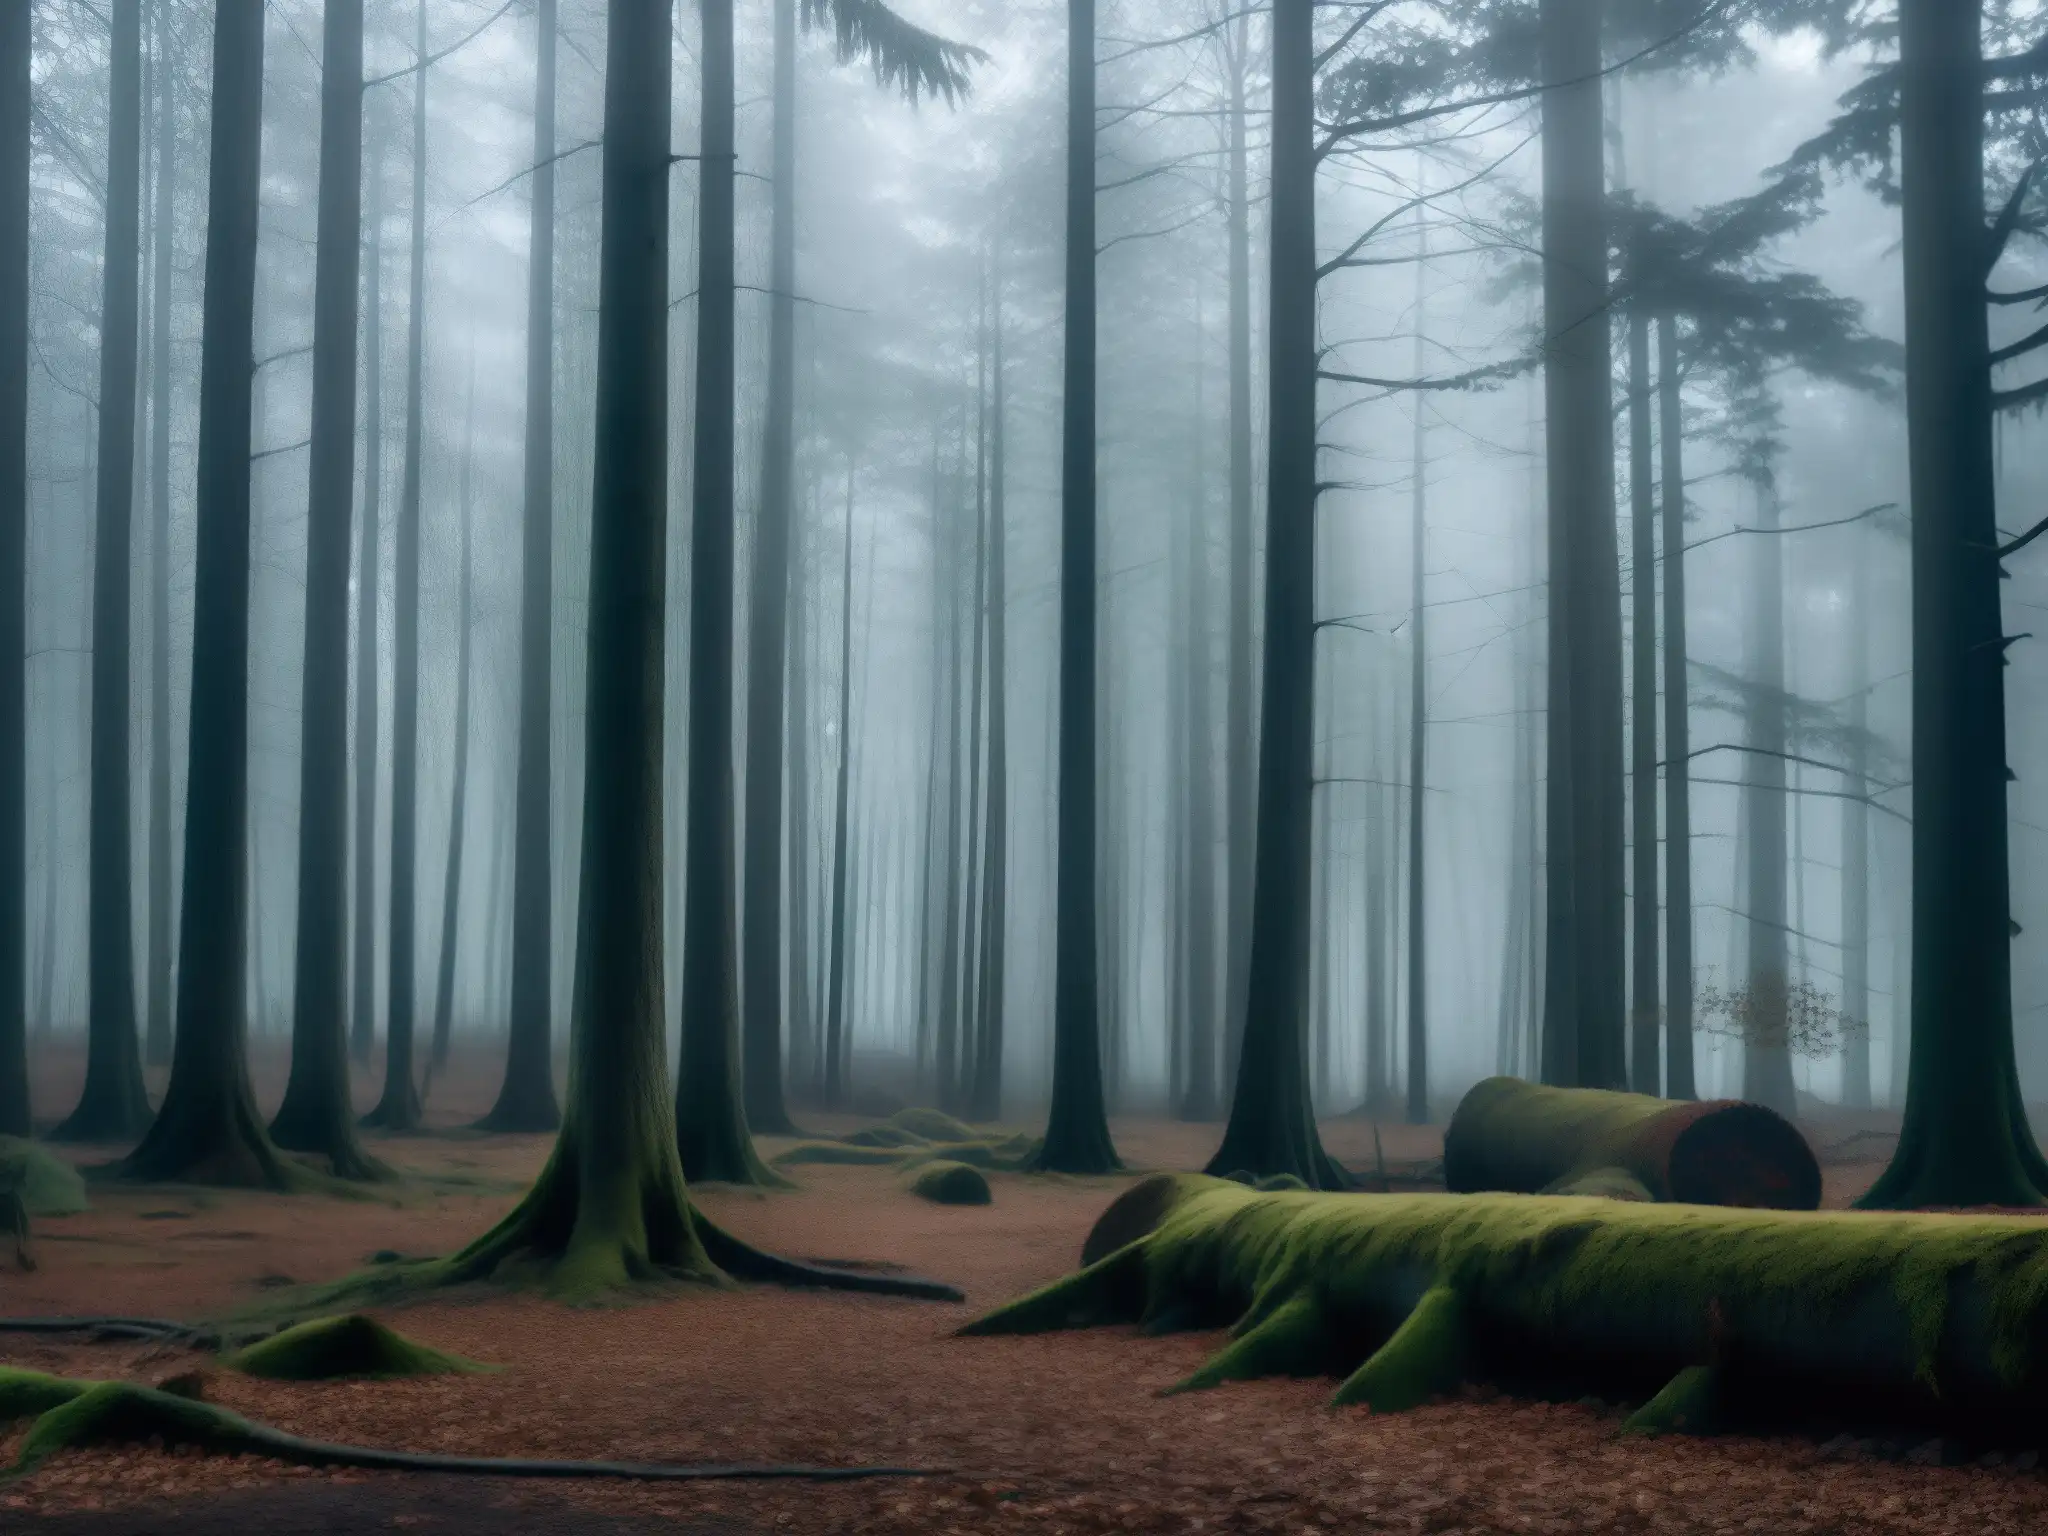 Imagen de un bosque denso y misterioso al anochecer, evocando el origen y expansión del mito Melonheads